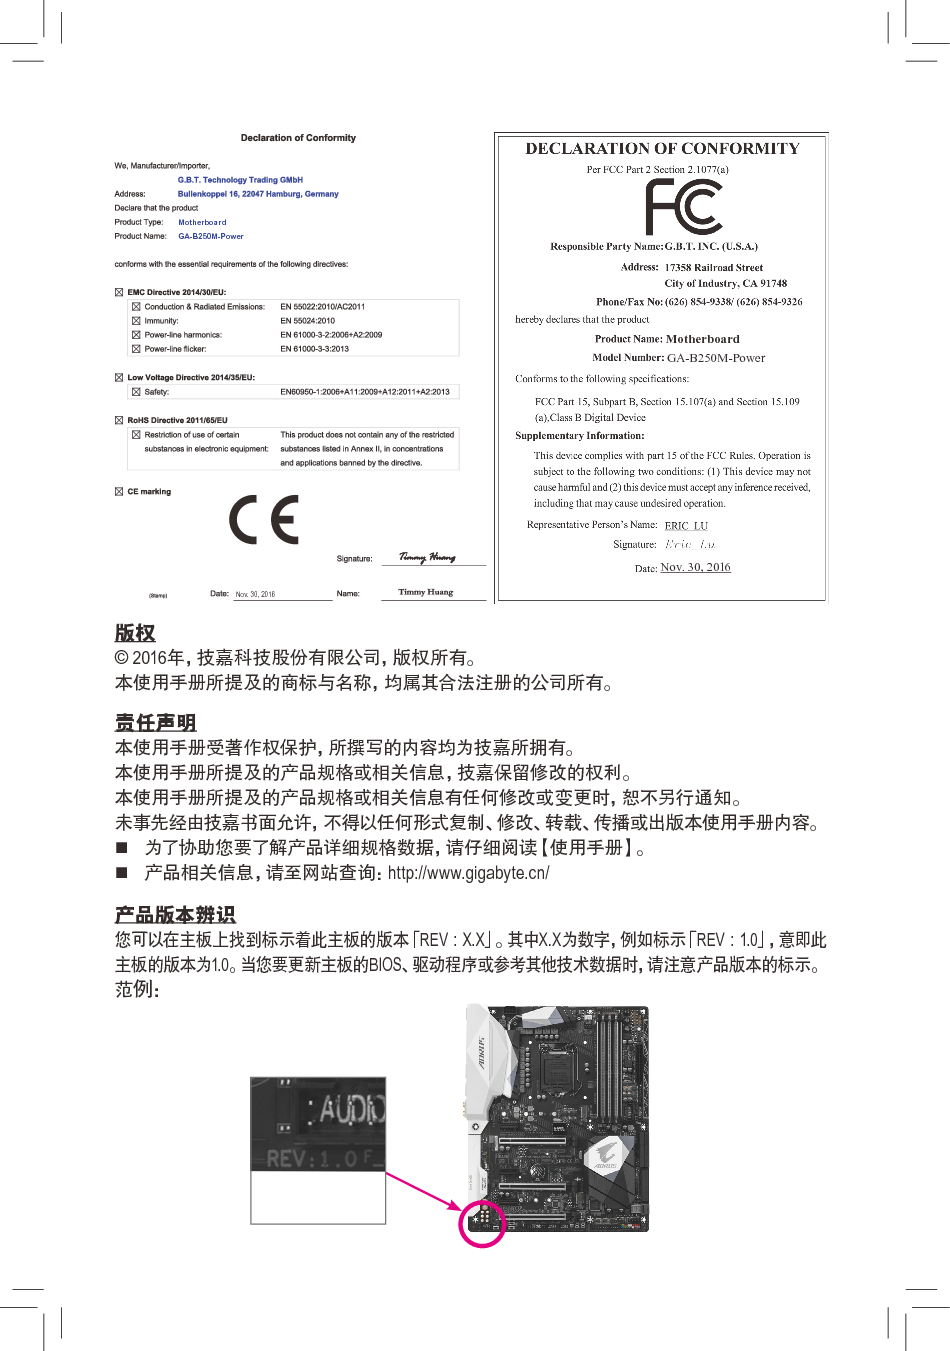 技嘉 Gigabyte GA-B250M-Power 使用手册 第1页